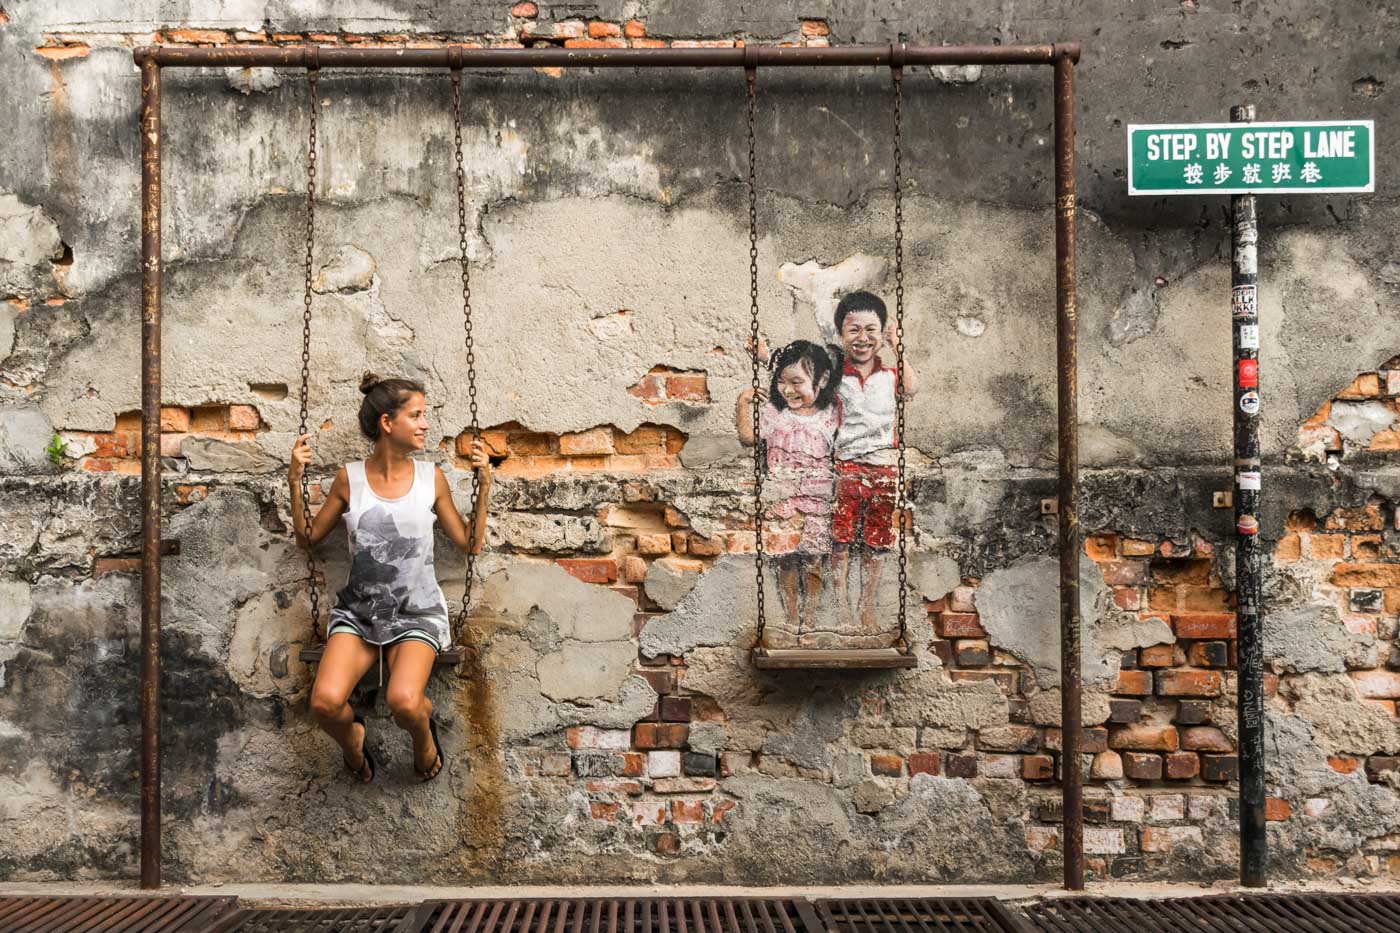 Fernanda sentada em um balanço de criança preso na parede como em forma de arte